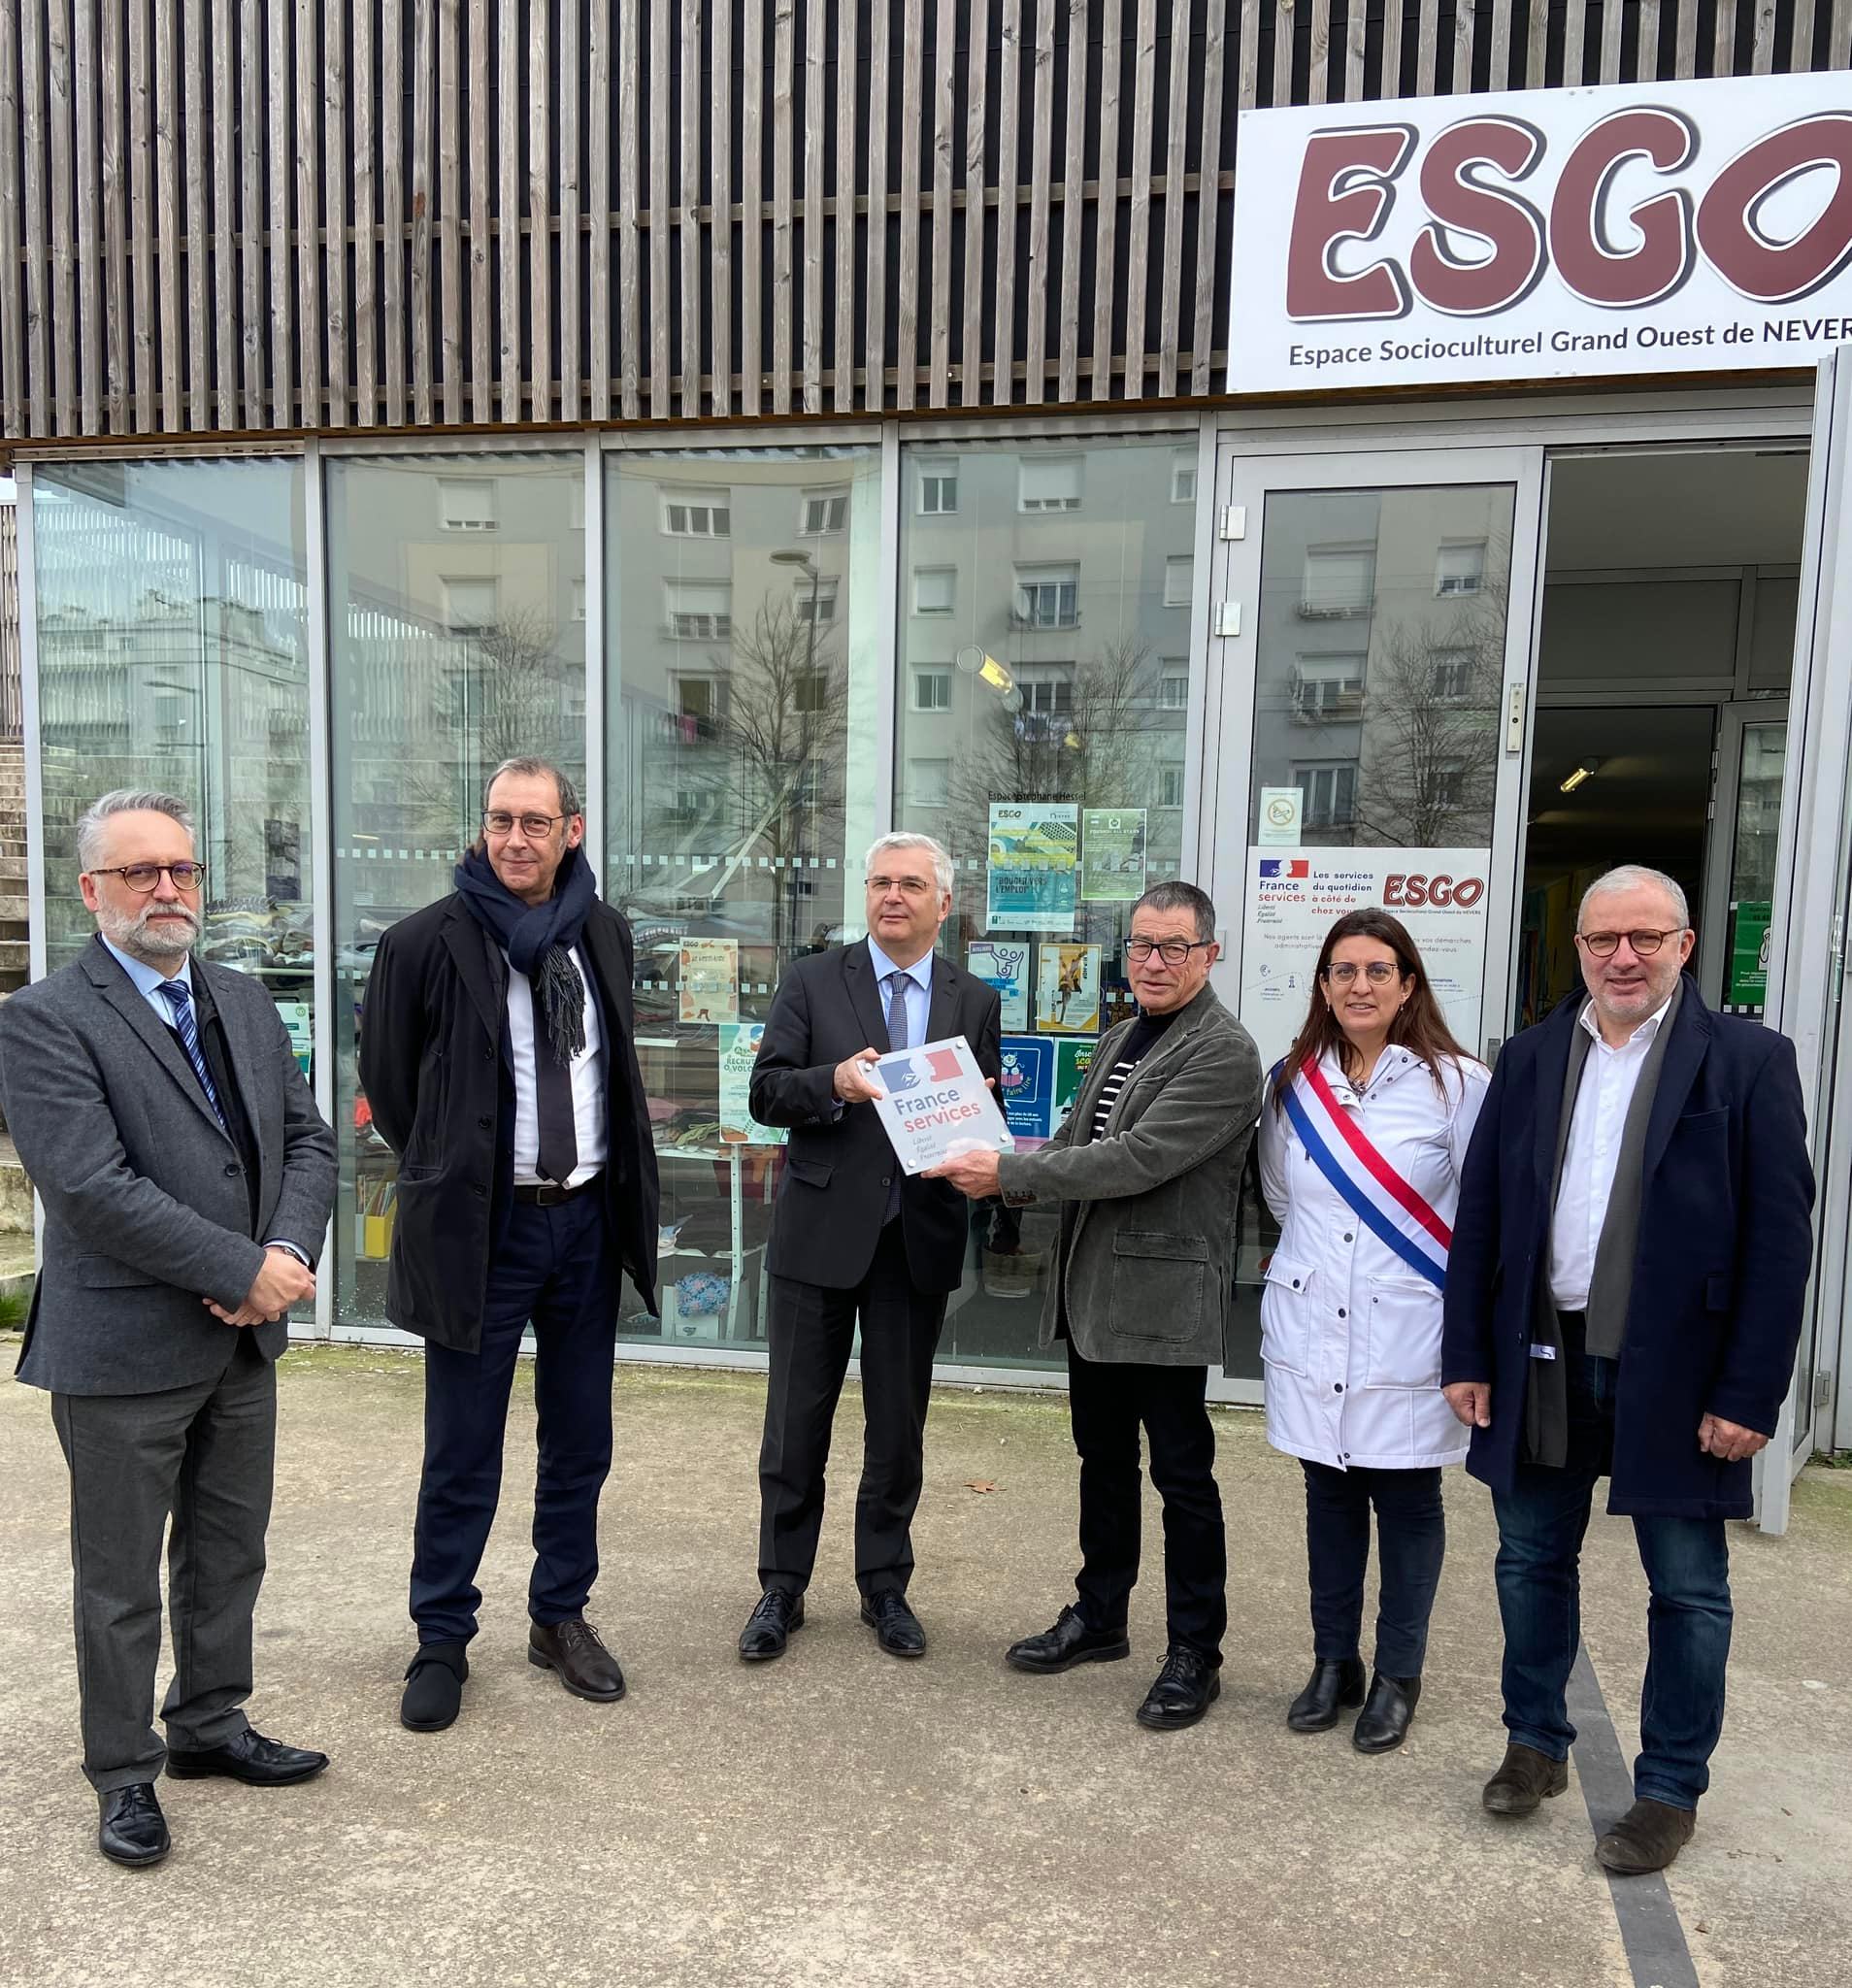 Inauguration de la Maison France Services située dans les locaux de l’Espace Socioculturel Grand Ouest de Nevers (ESGO).